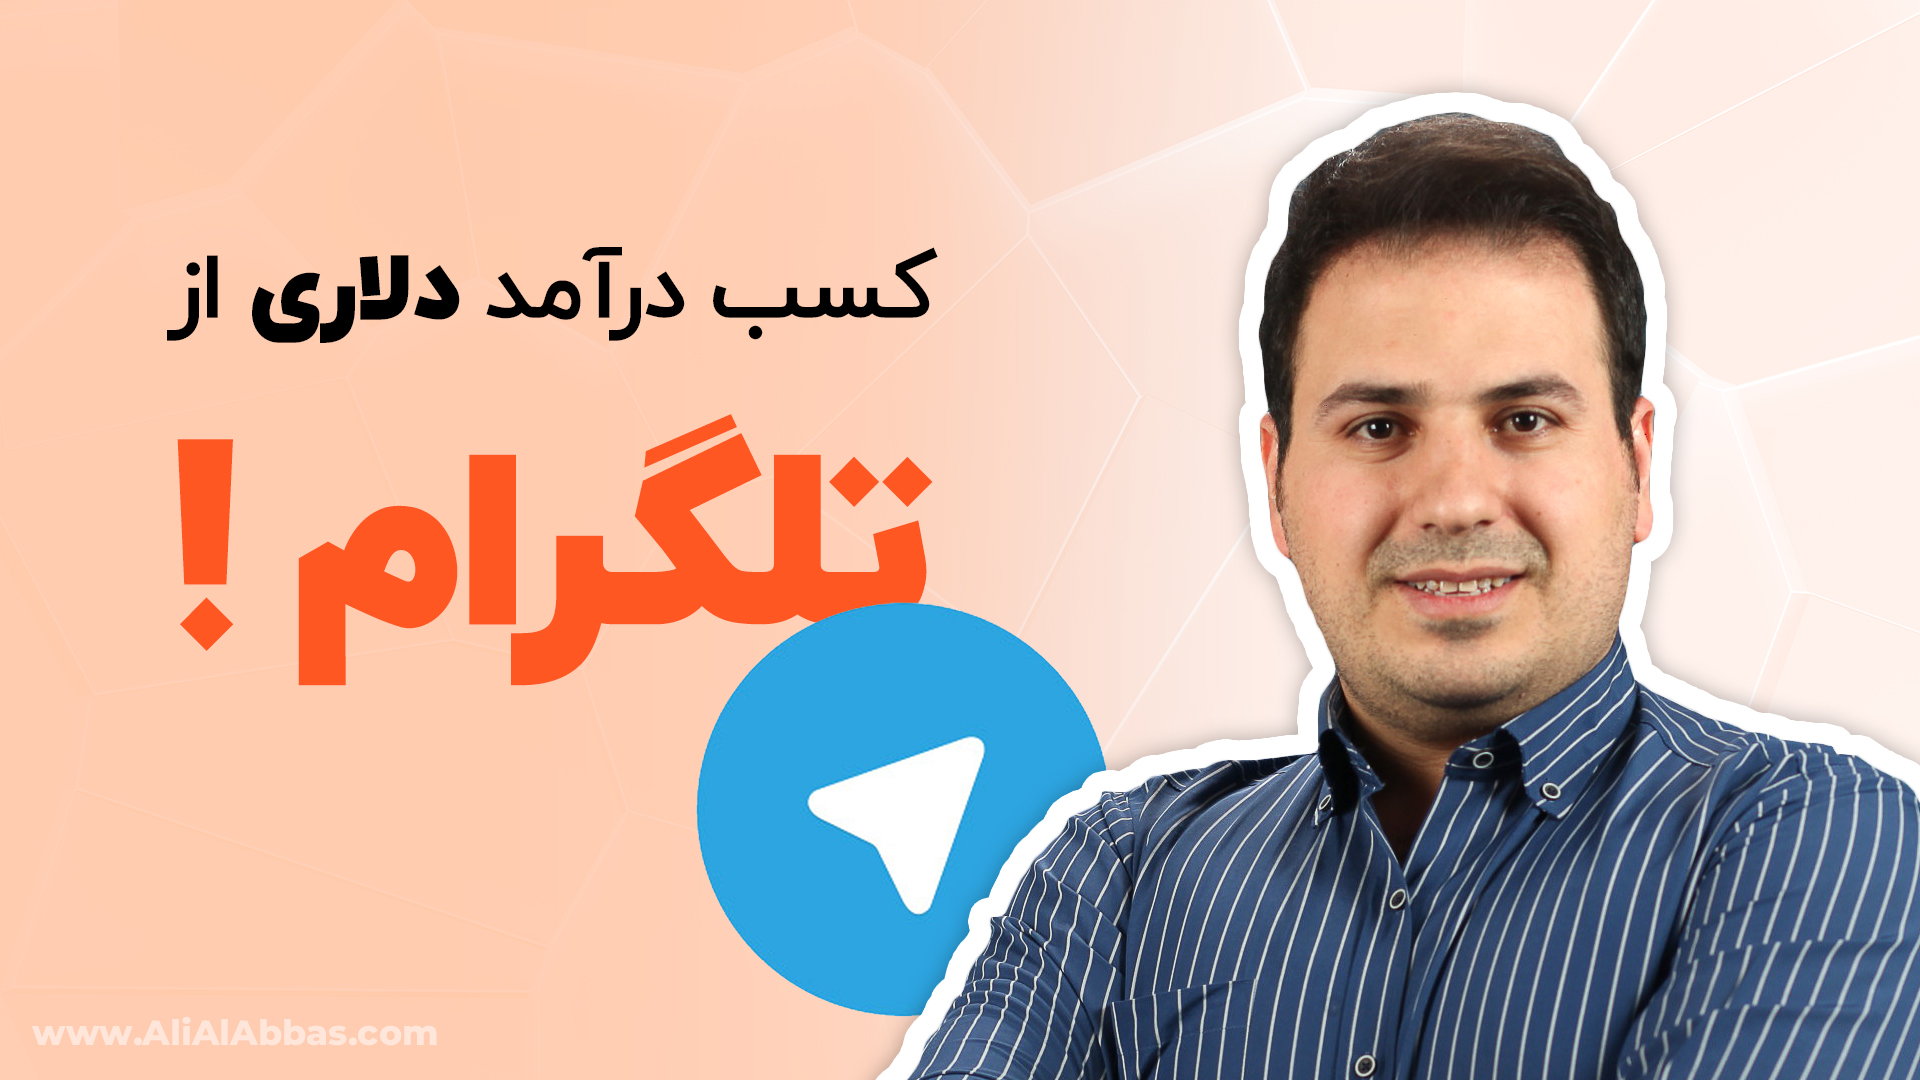 کسب درآمد دلاری از تلگرام چگونه است؟ - علی آل عباس